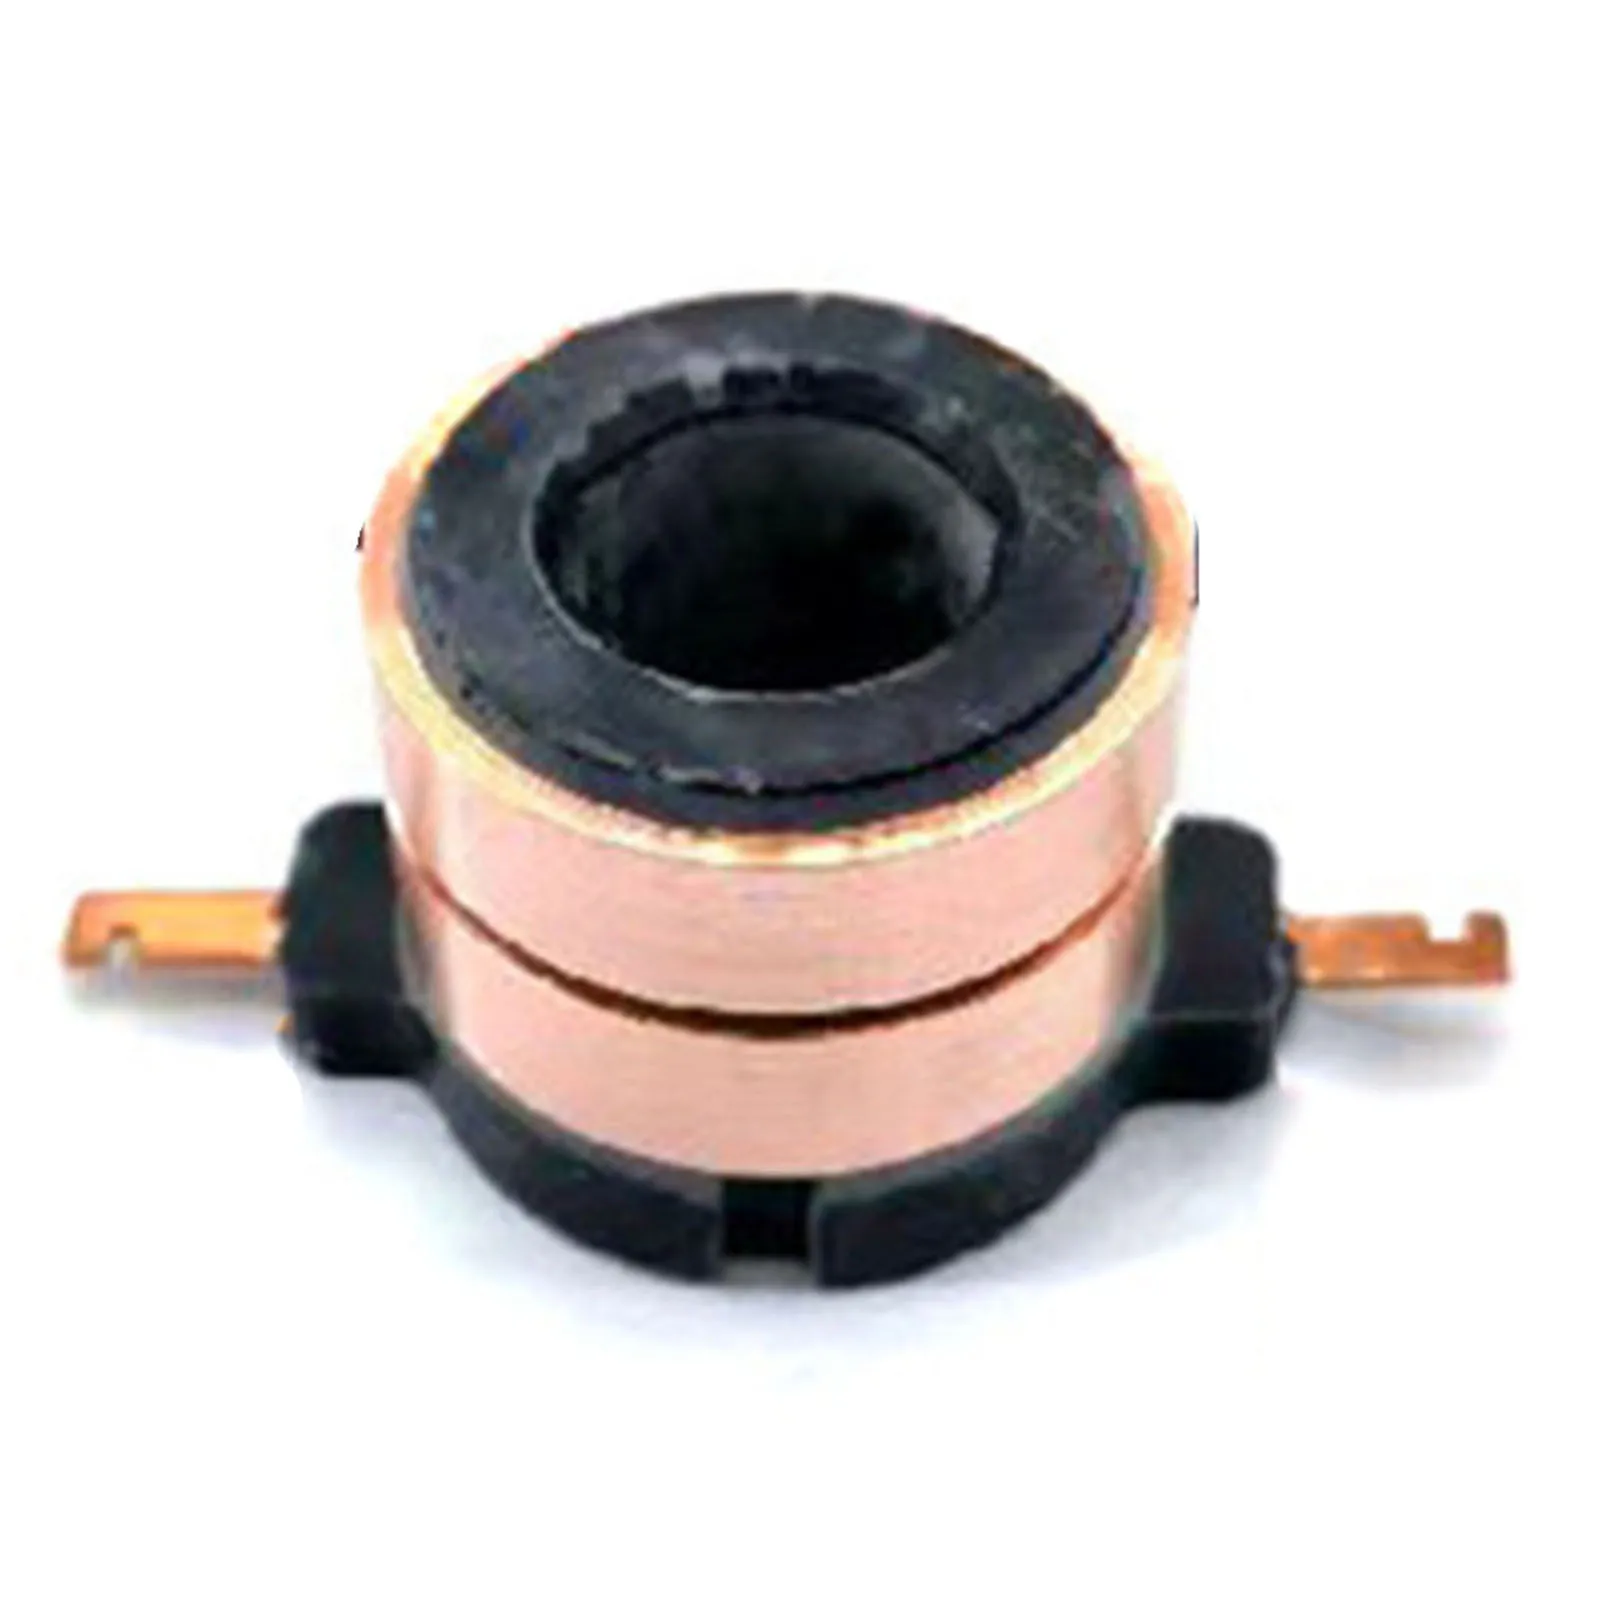 

Коллекционное кольцо 33,7 мм, коллекционное кольцо 33,7x17,9x9 (29,7) мм, черное, коллекционное кольцо, медный тон для двигателя постоянного тока